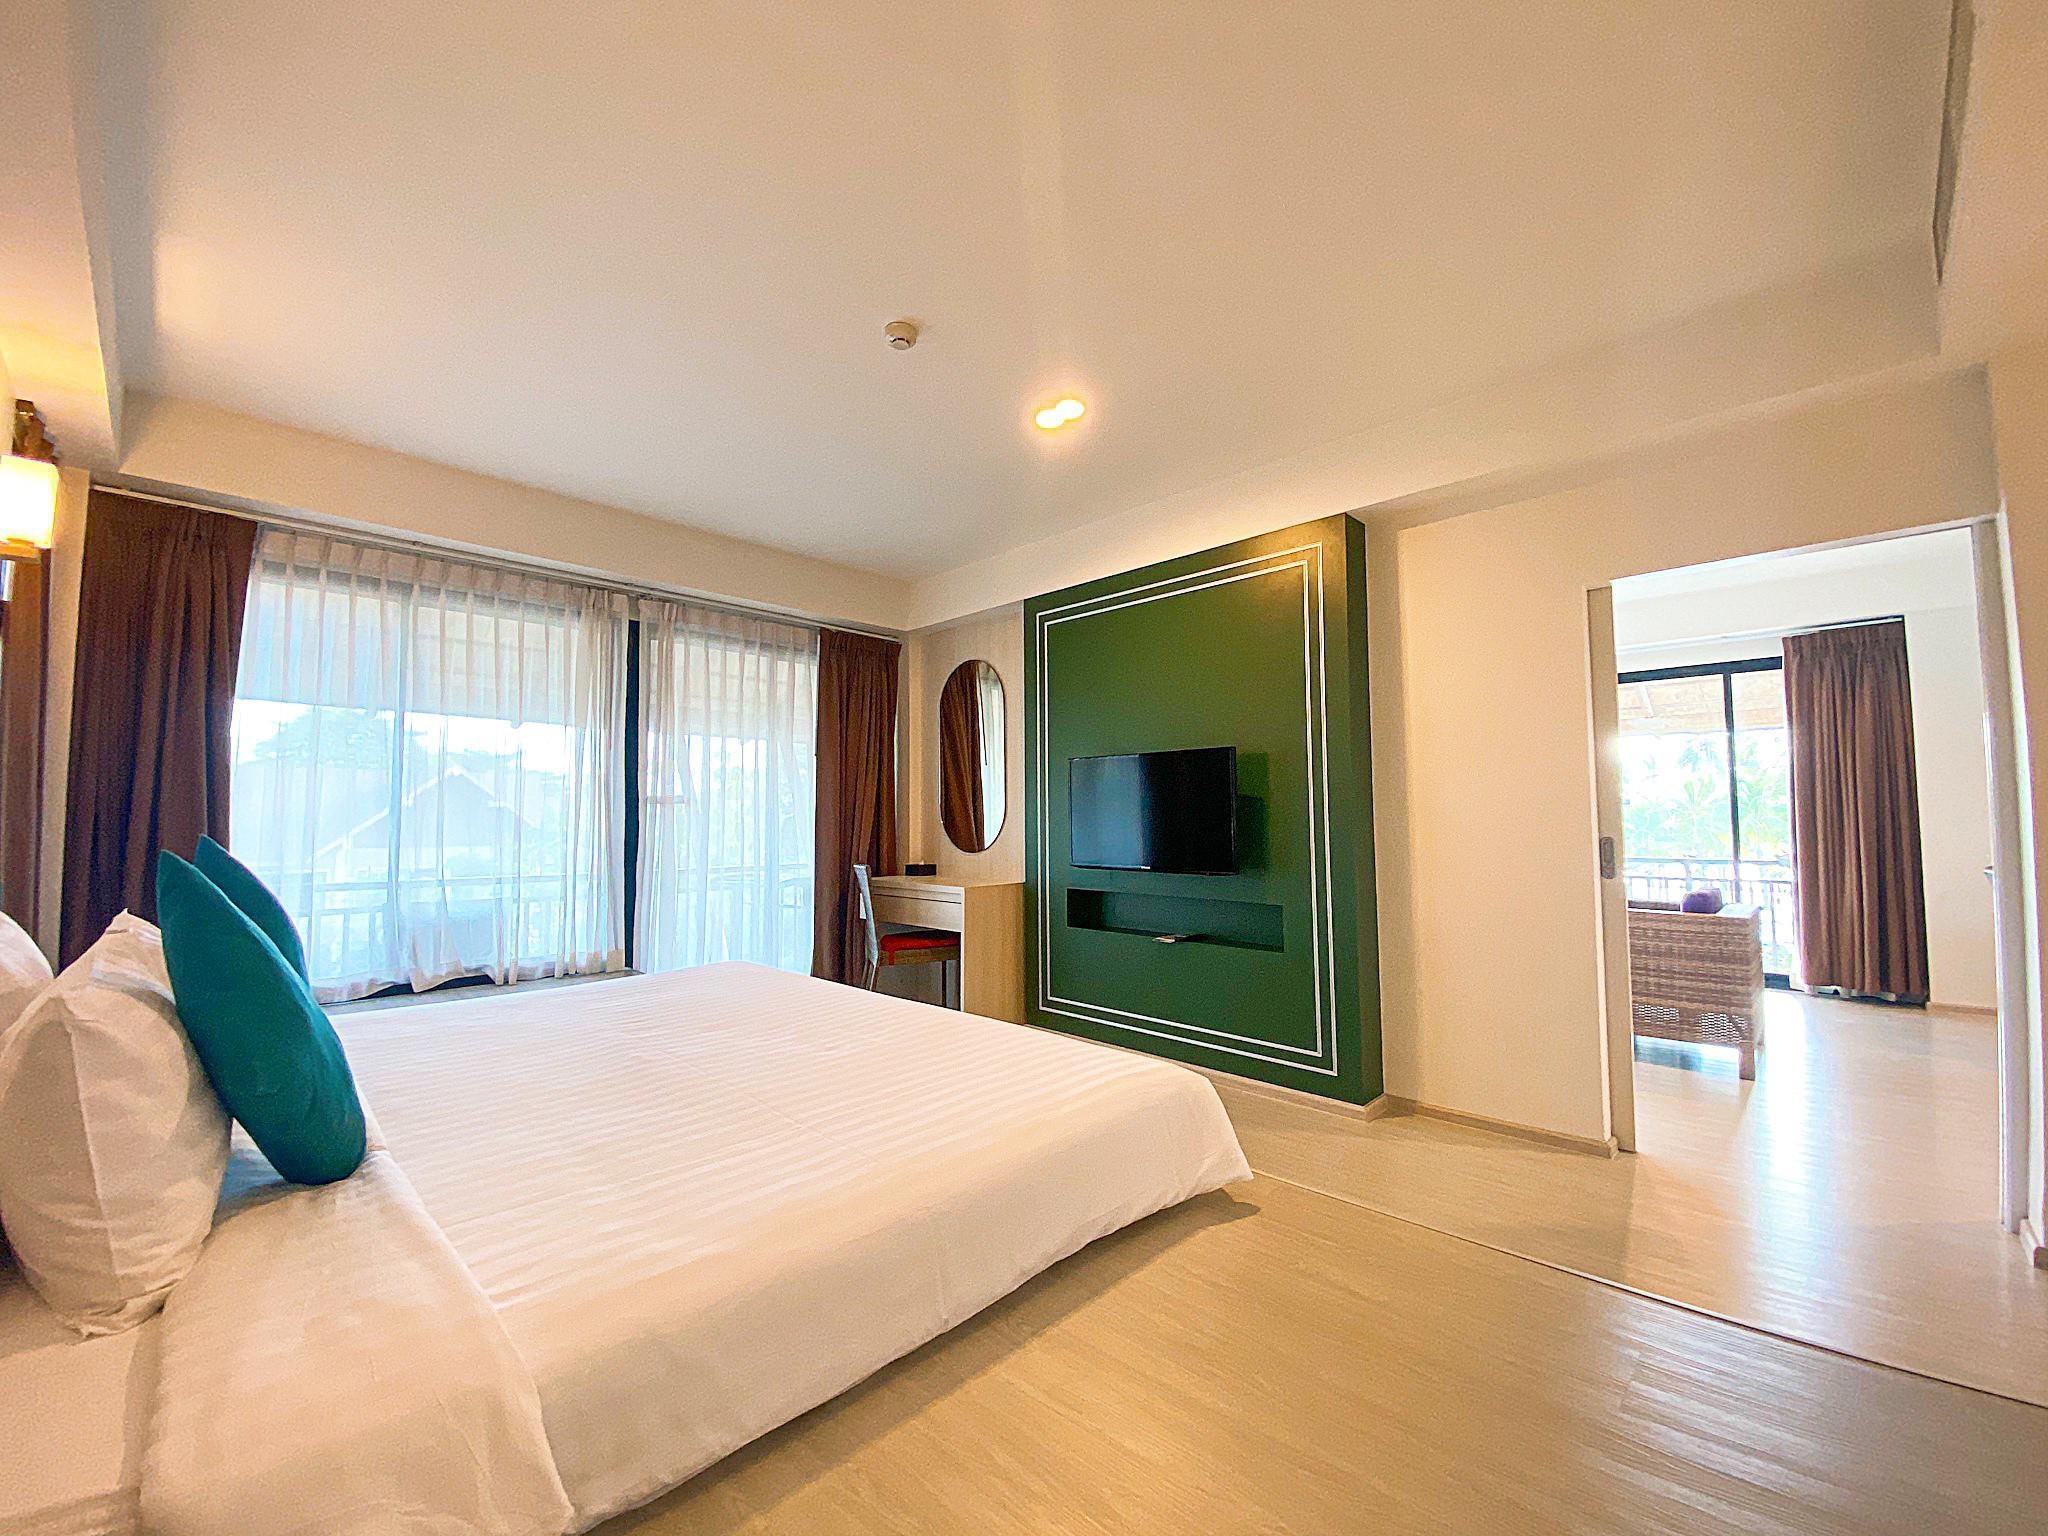 รีวิวโรงแรมบางแสนเฮอริเทจ - โปรโมชั่นโรงแรม 4 ดาวในชลบุรี | Trip.com